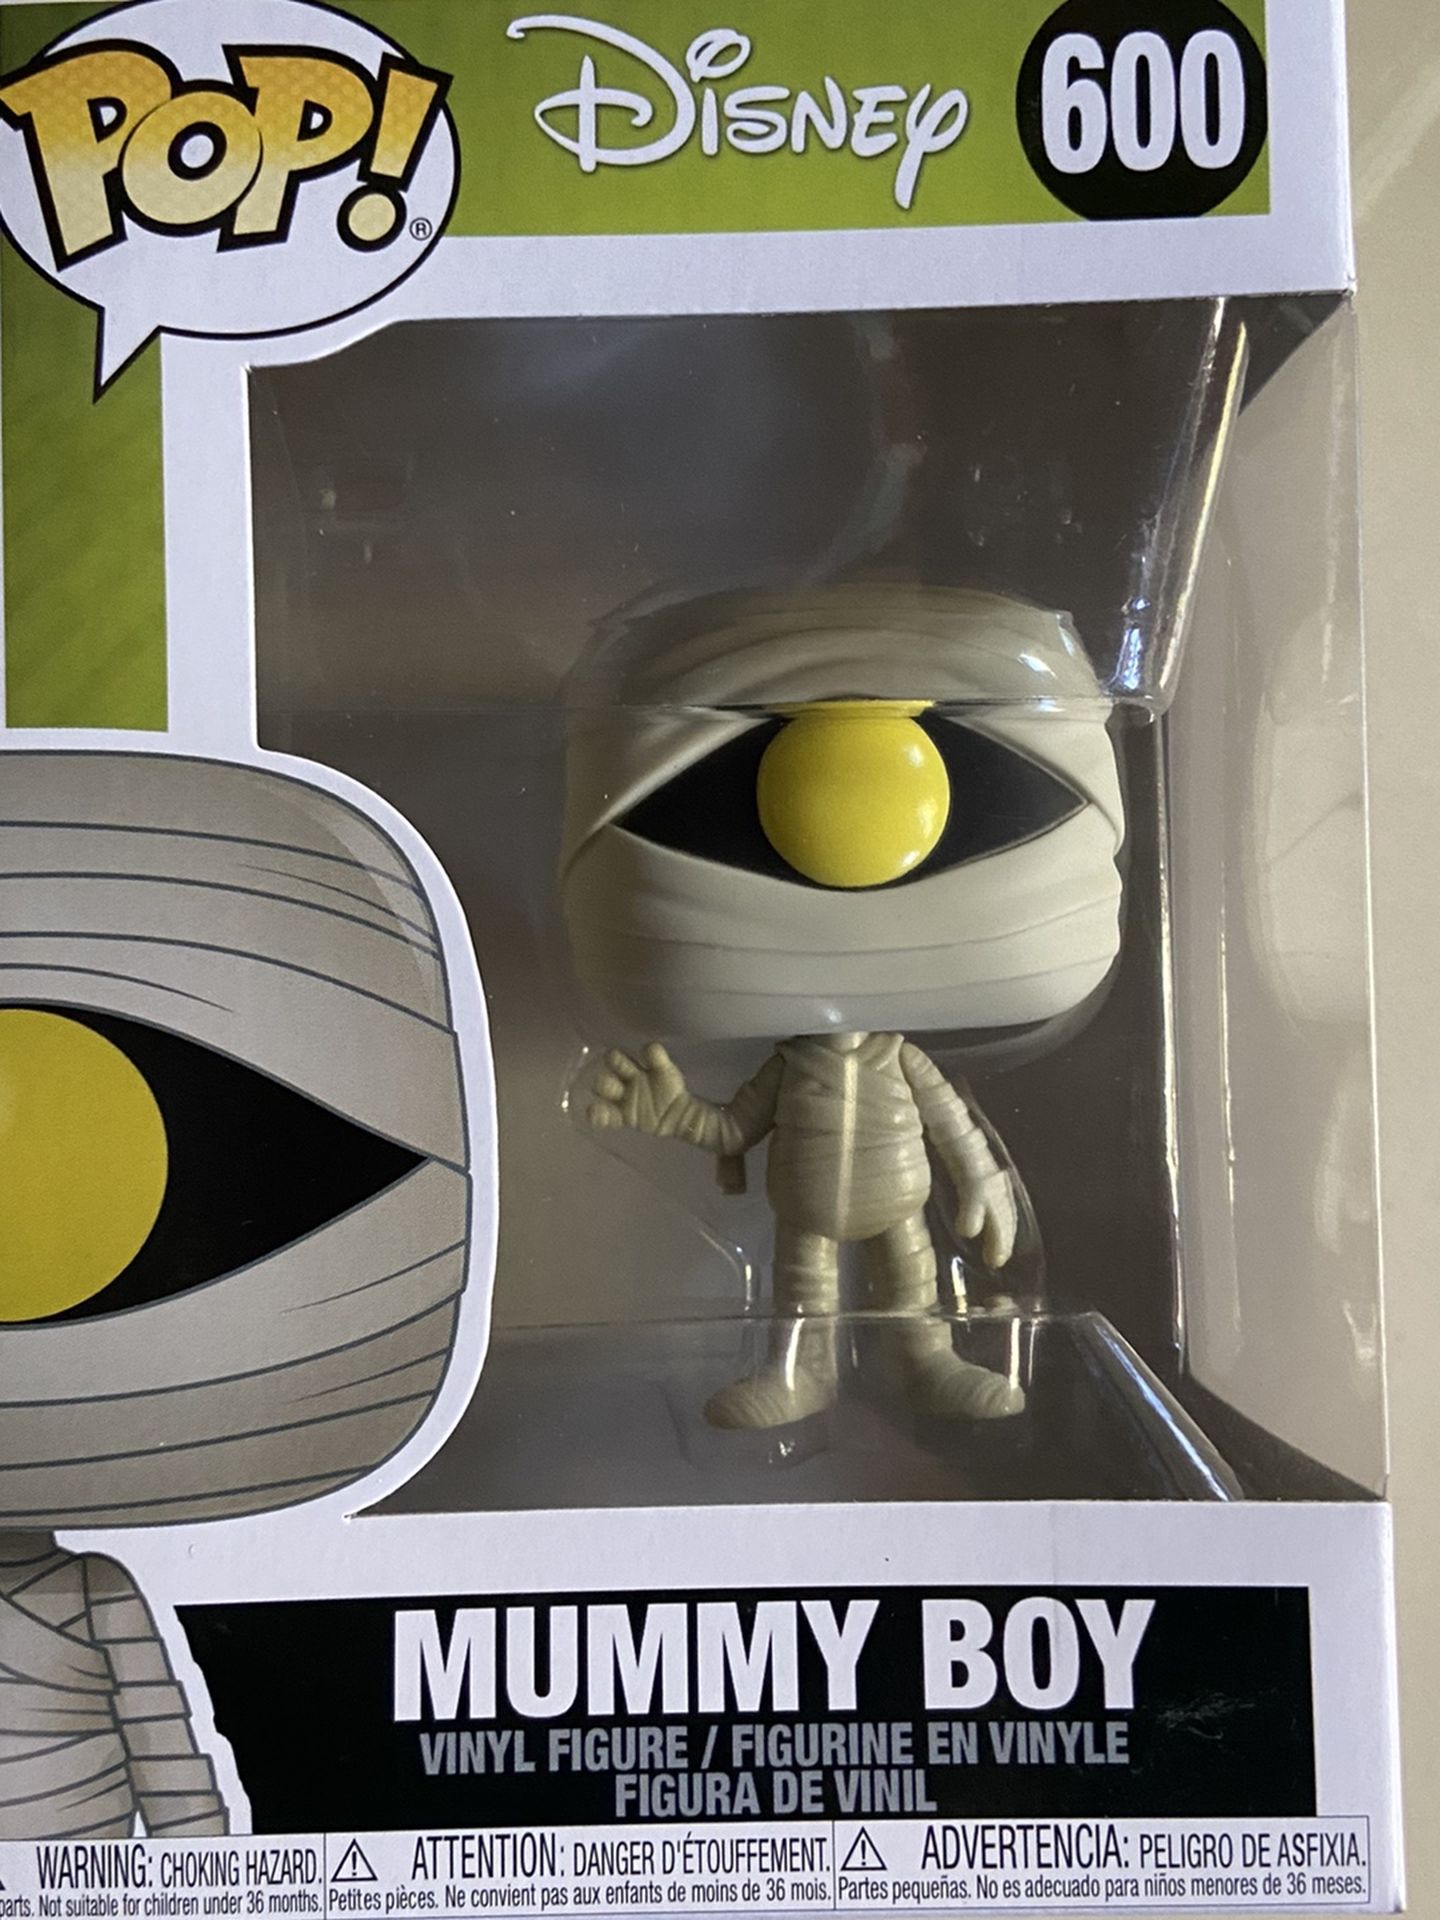 Mummy boy pop Figurine Disney